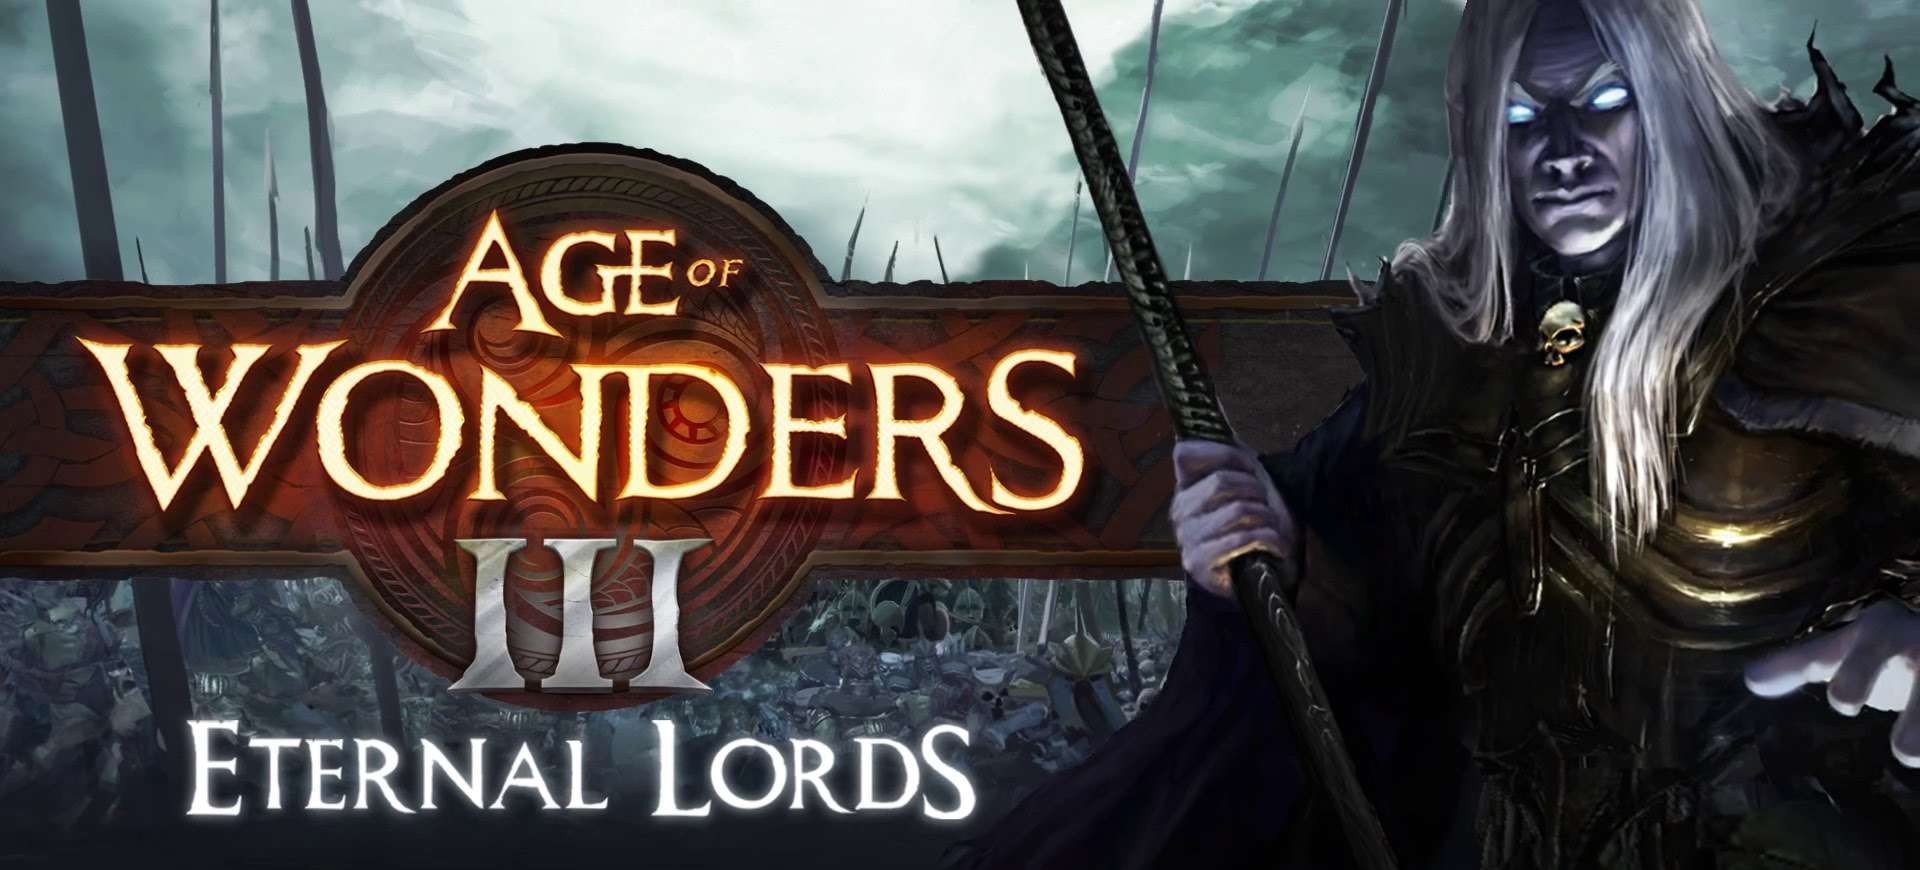 Age of Wonders III: Eternal Lords - Đánh Giá Game